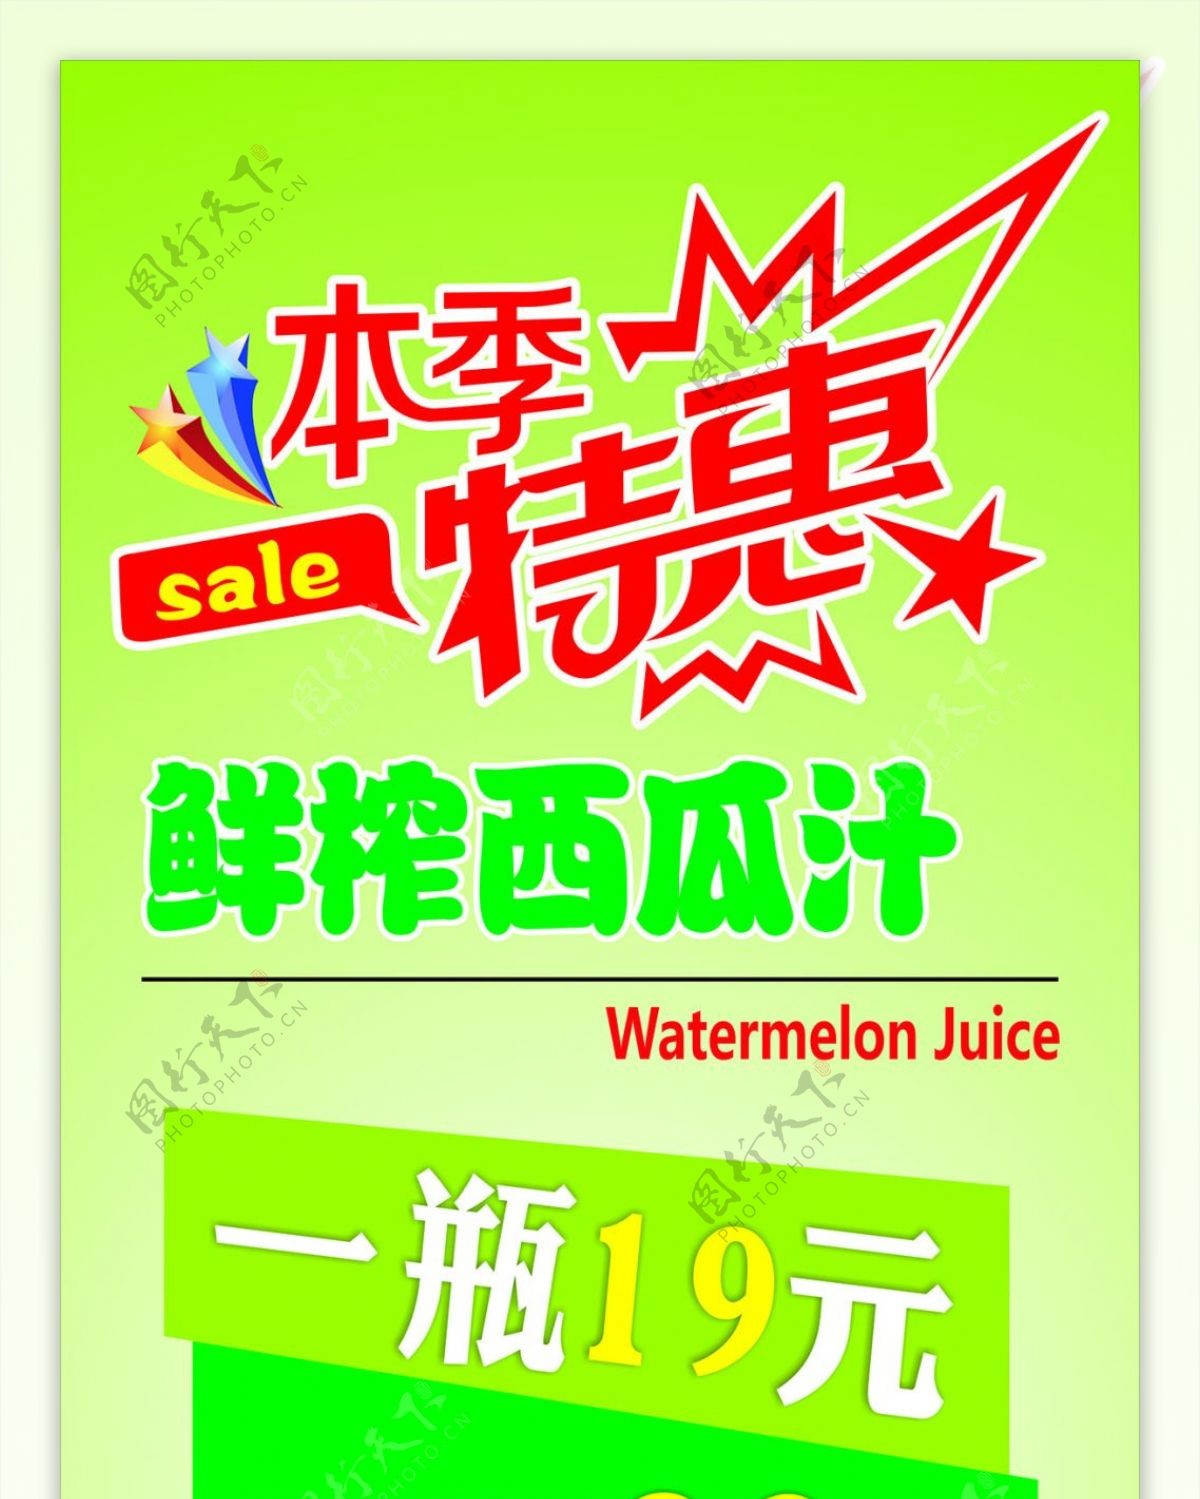 鲜榨西瓜汁优惠活动海报图片